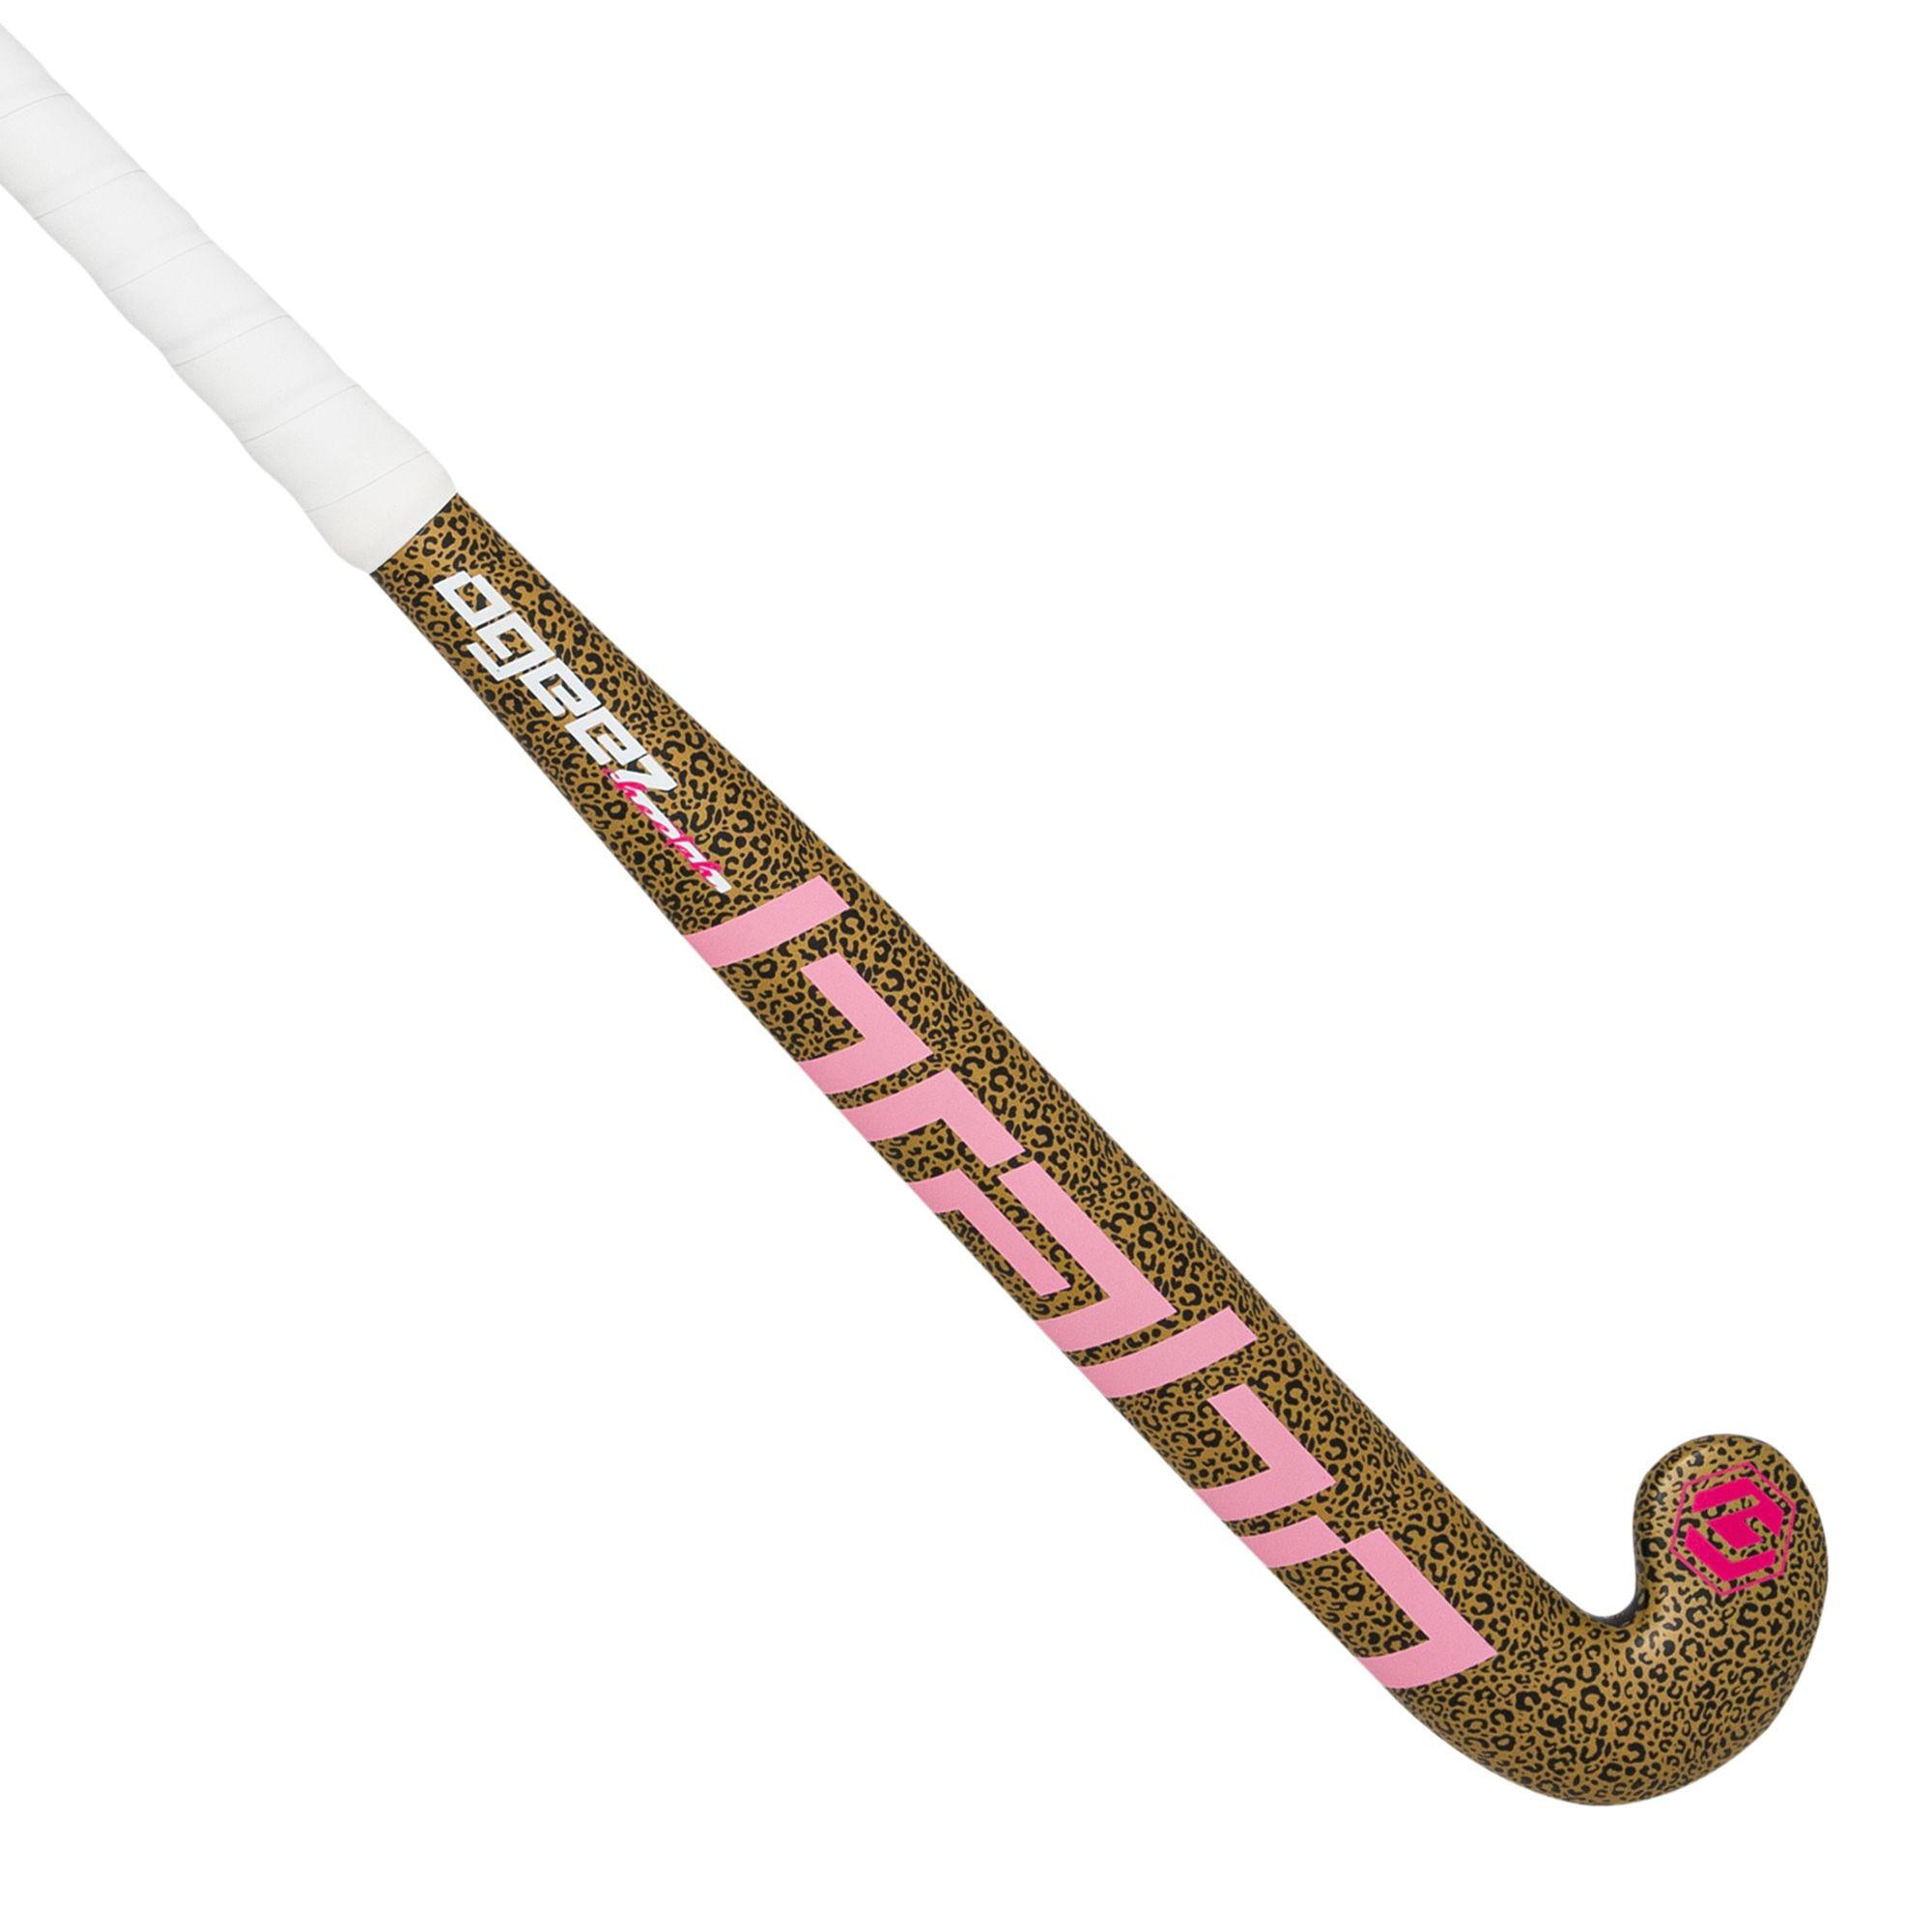 Hockeystick O'Geez Cheetah Midbow